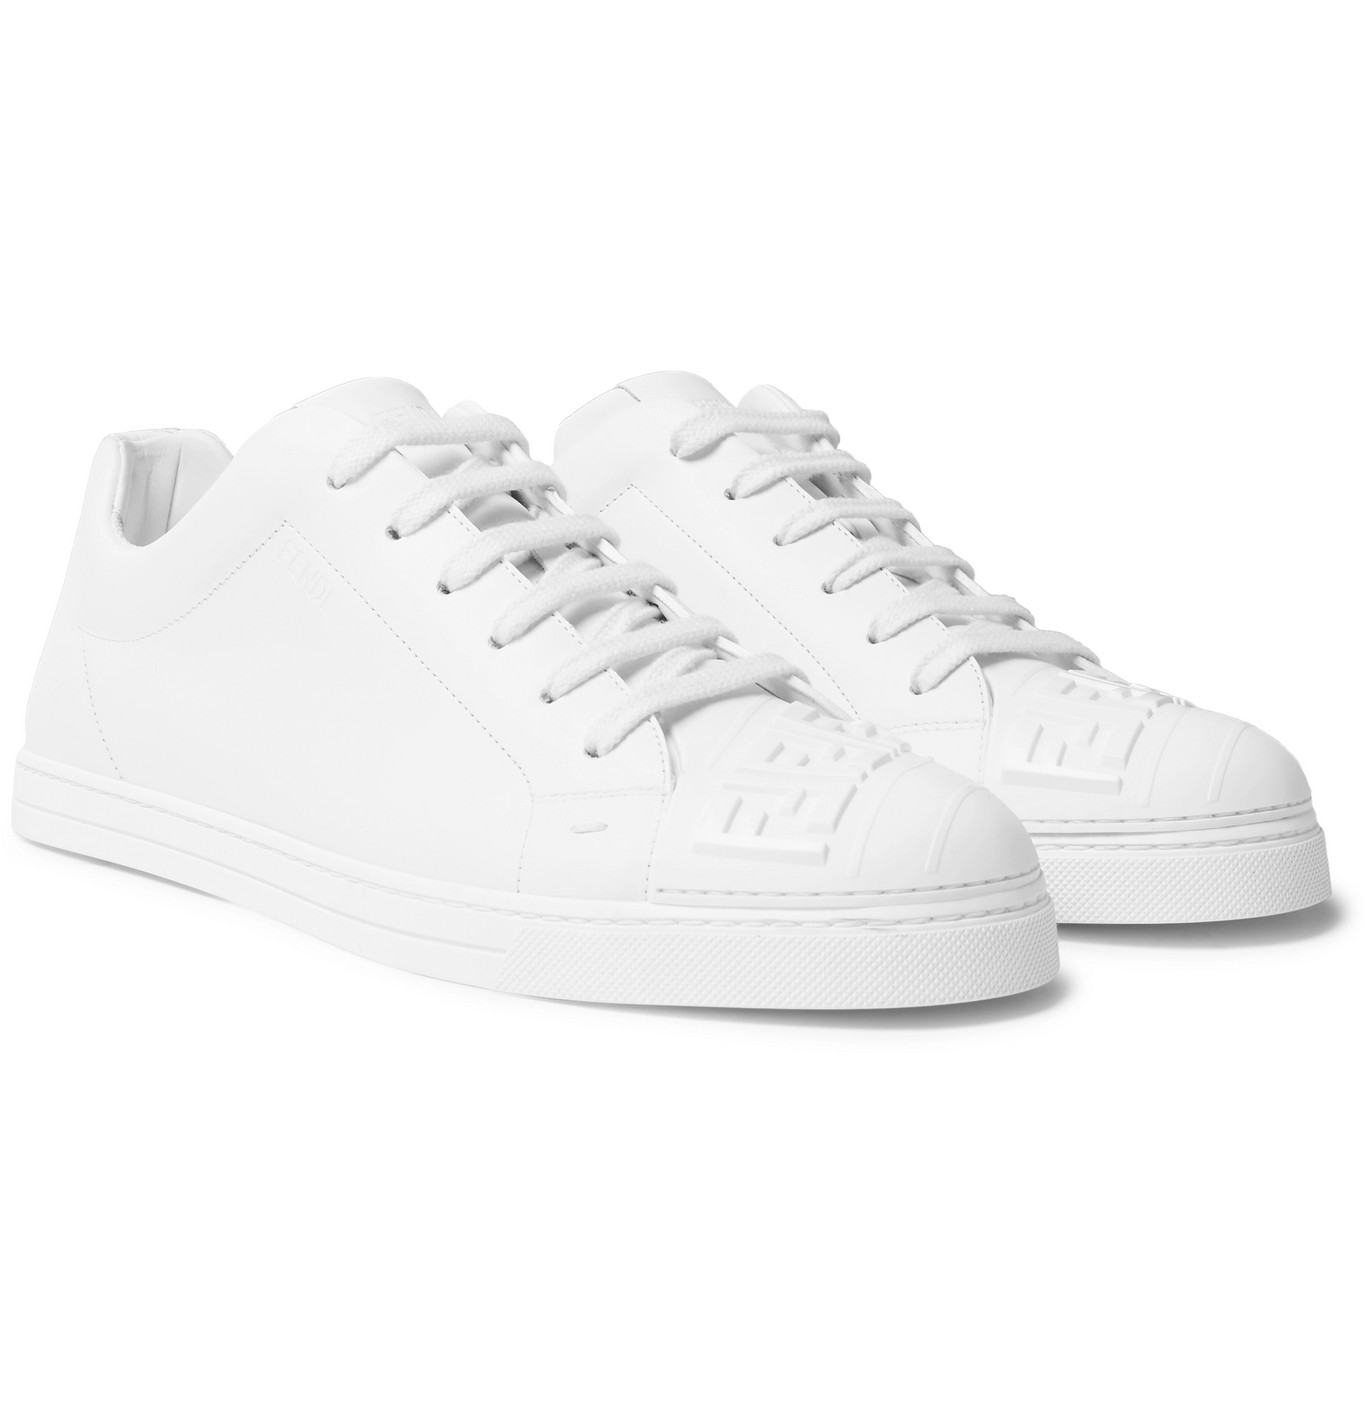 fendi white leather sneakers